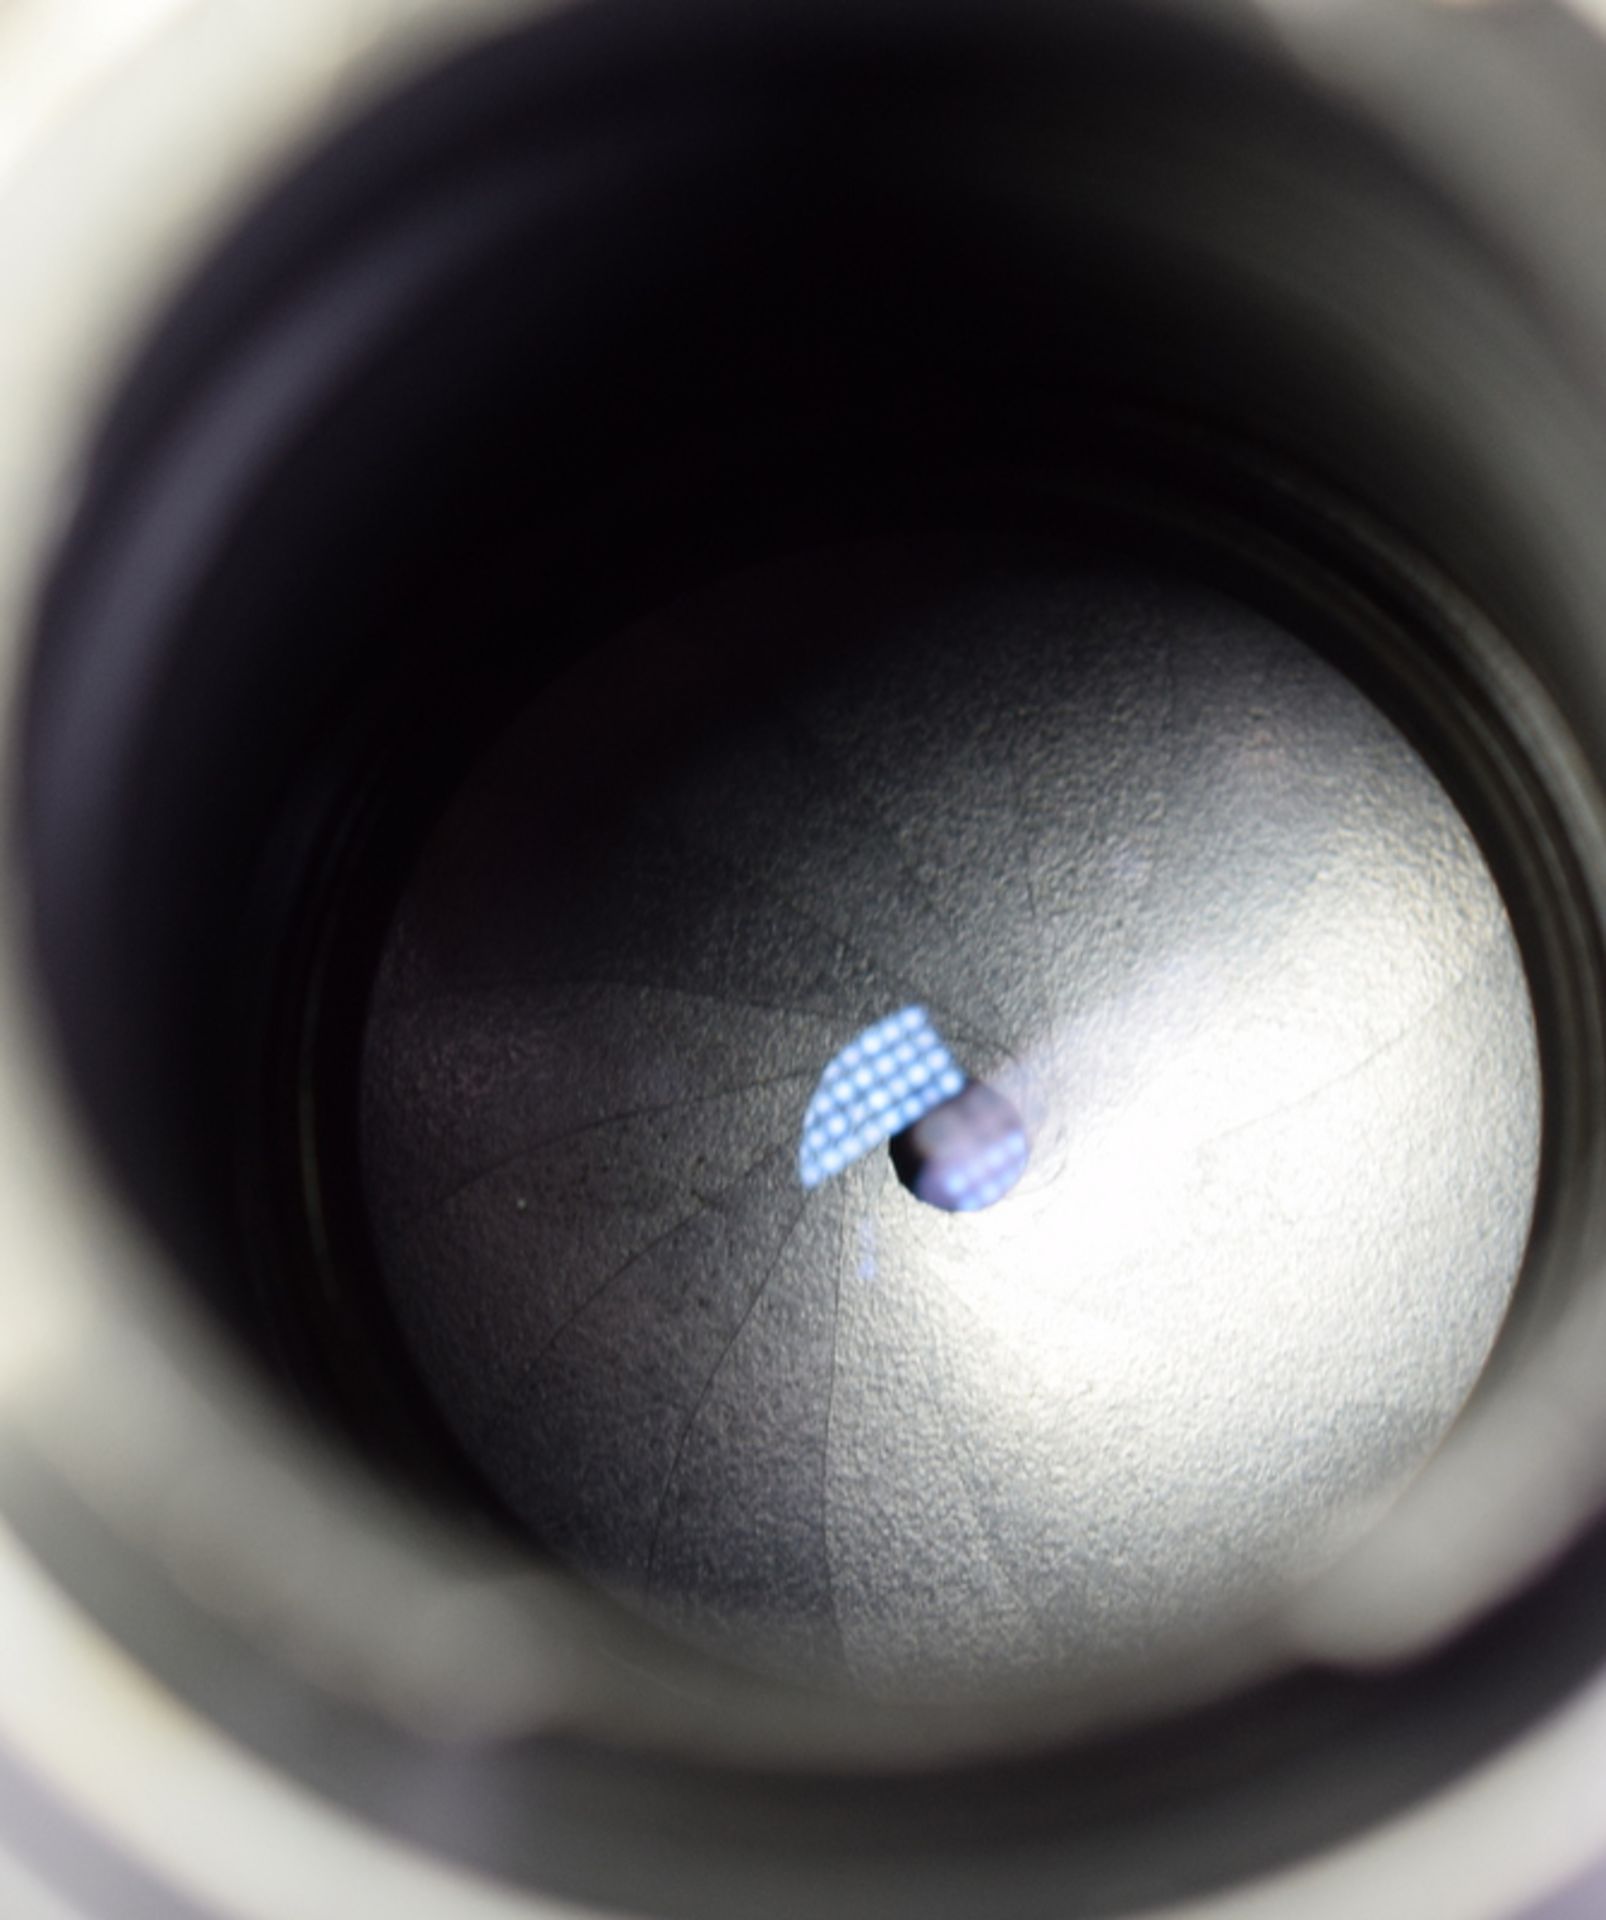 Meyer Optik Trioplan 2.8/100mm Exakta Mount Lens - Image 7 of 8